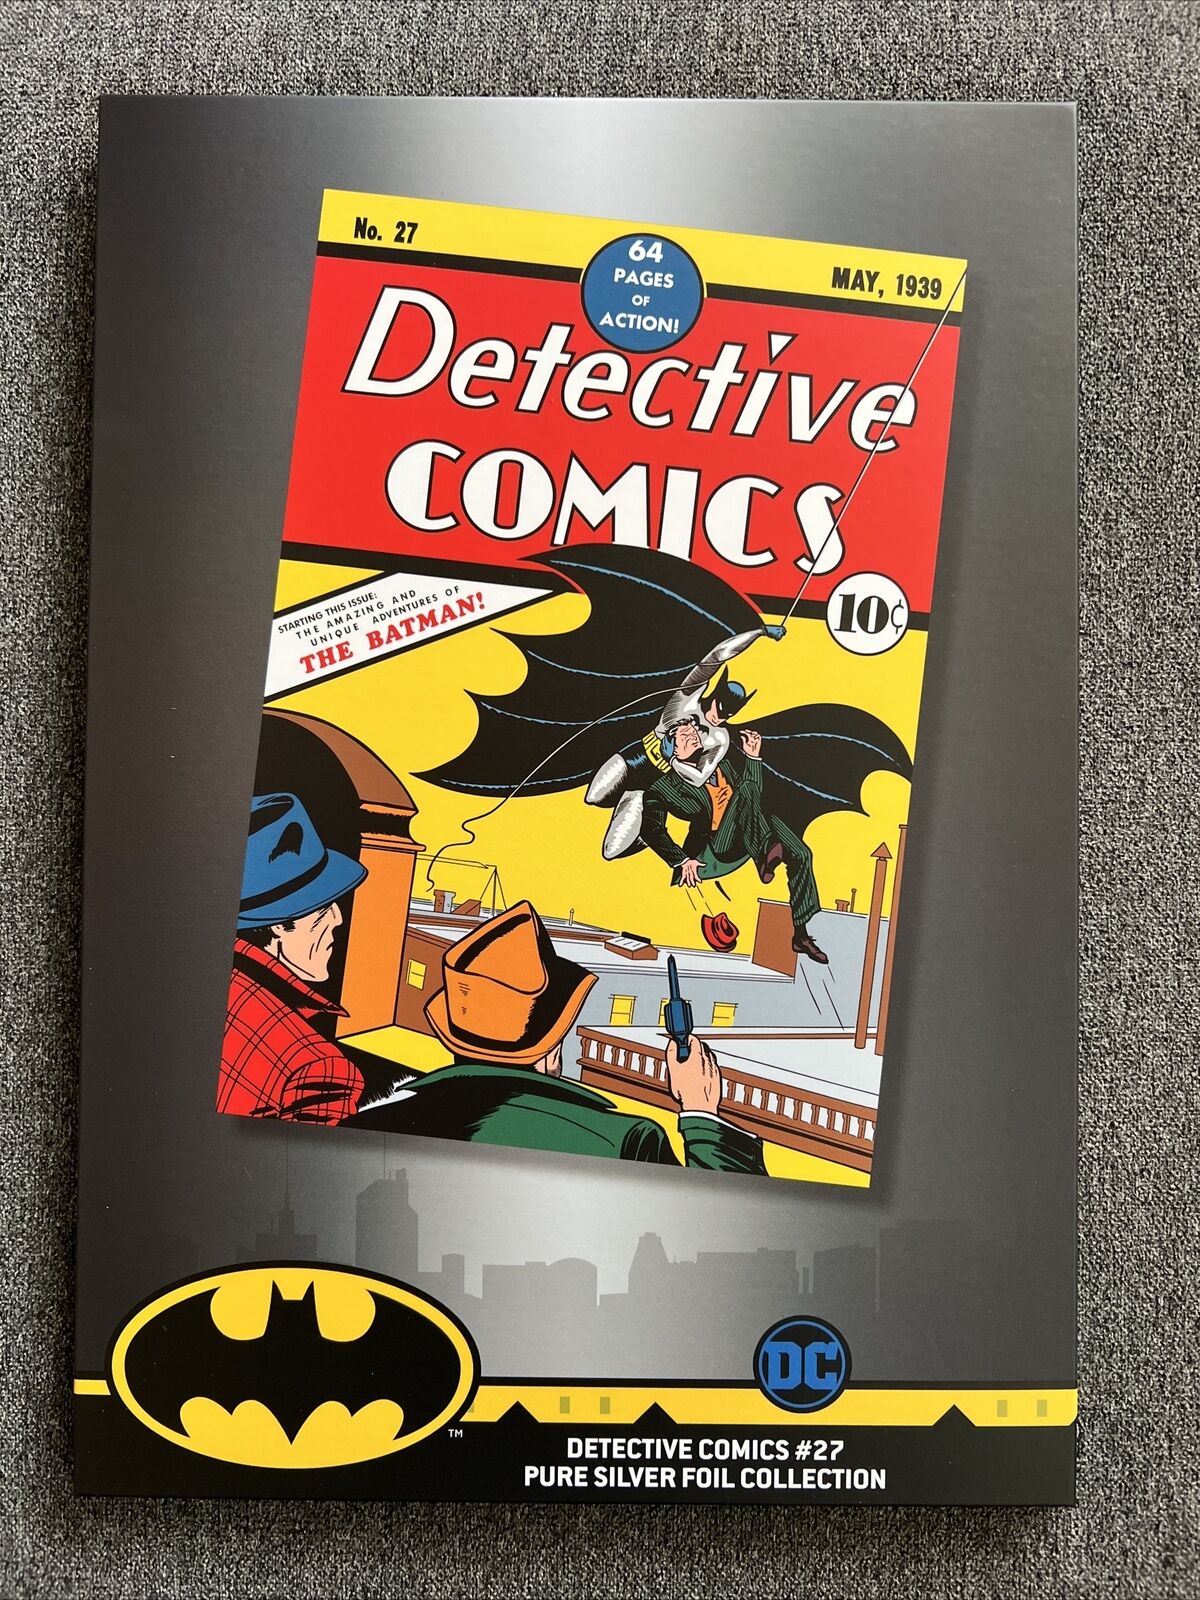 Batman Detective Comics #27 2018 Pure Silver Foil 35g .999 Fine Silver NZMINT